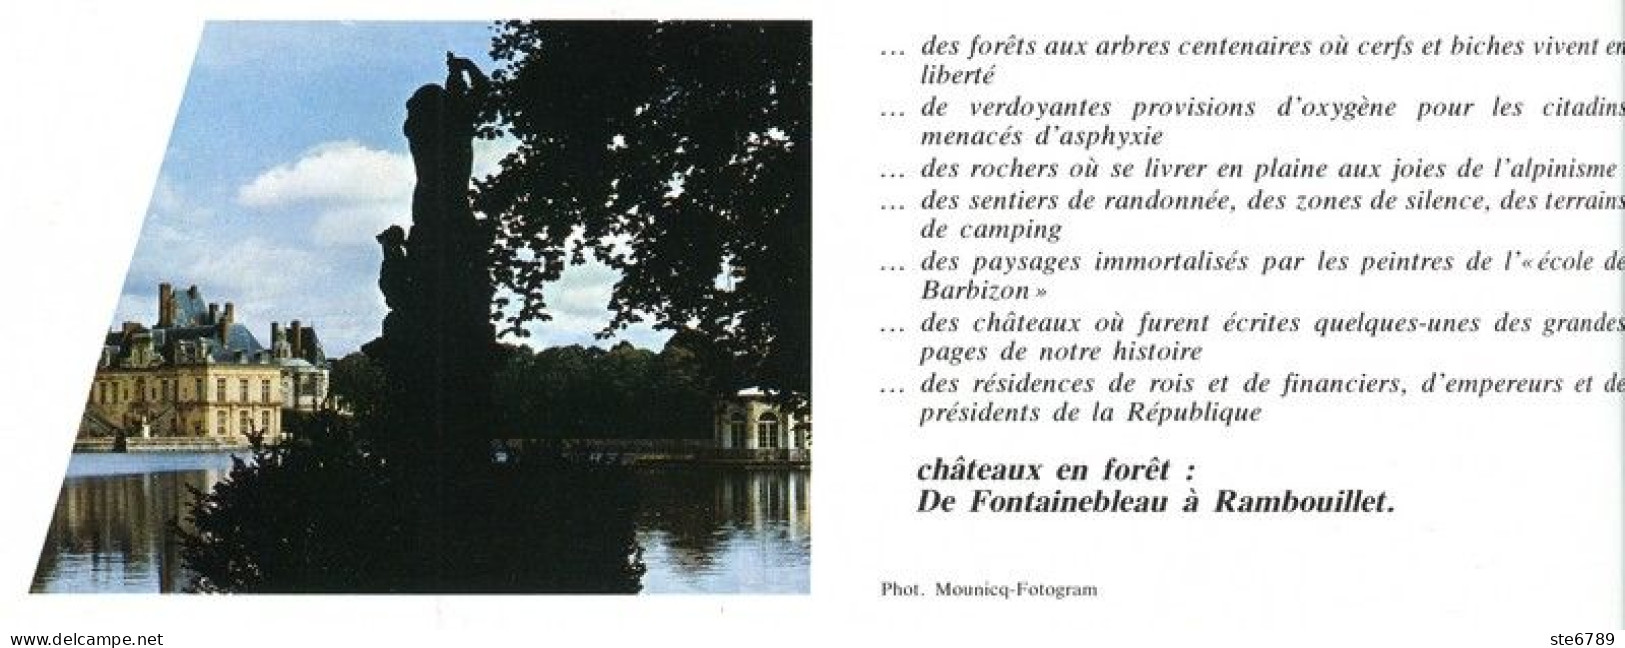 CHATEAUX EN FORET DE FONTAINEBLEAU A RAMBOUILLET Revue Photos 1980 BEAUTES DE LA FRANCE N° 16 - Géographie